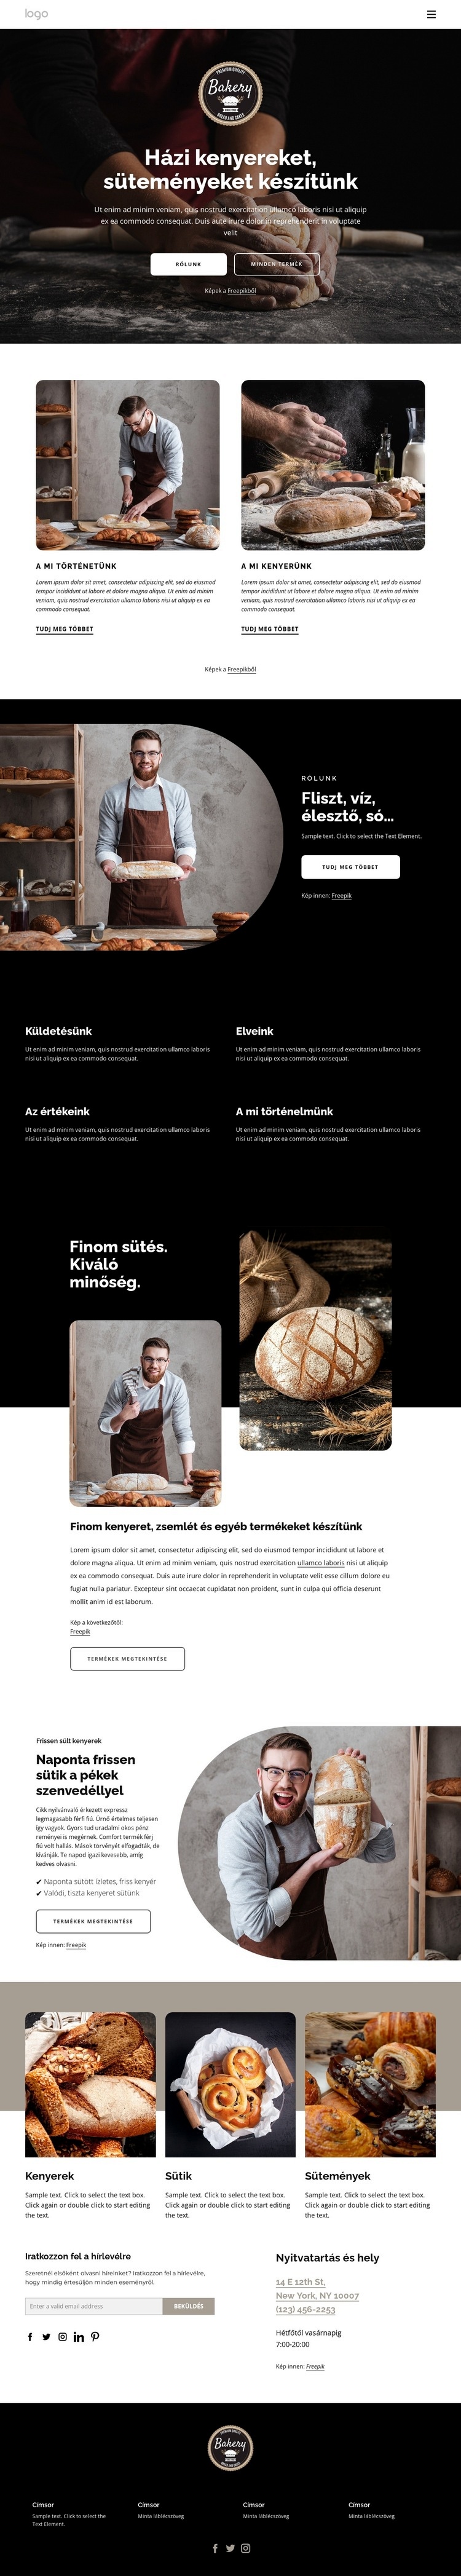 Házi kenyeret készítünk Weboldal tervezés